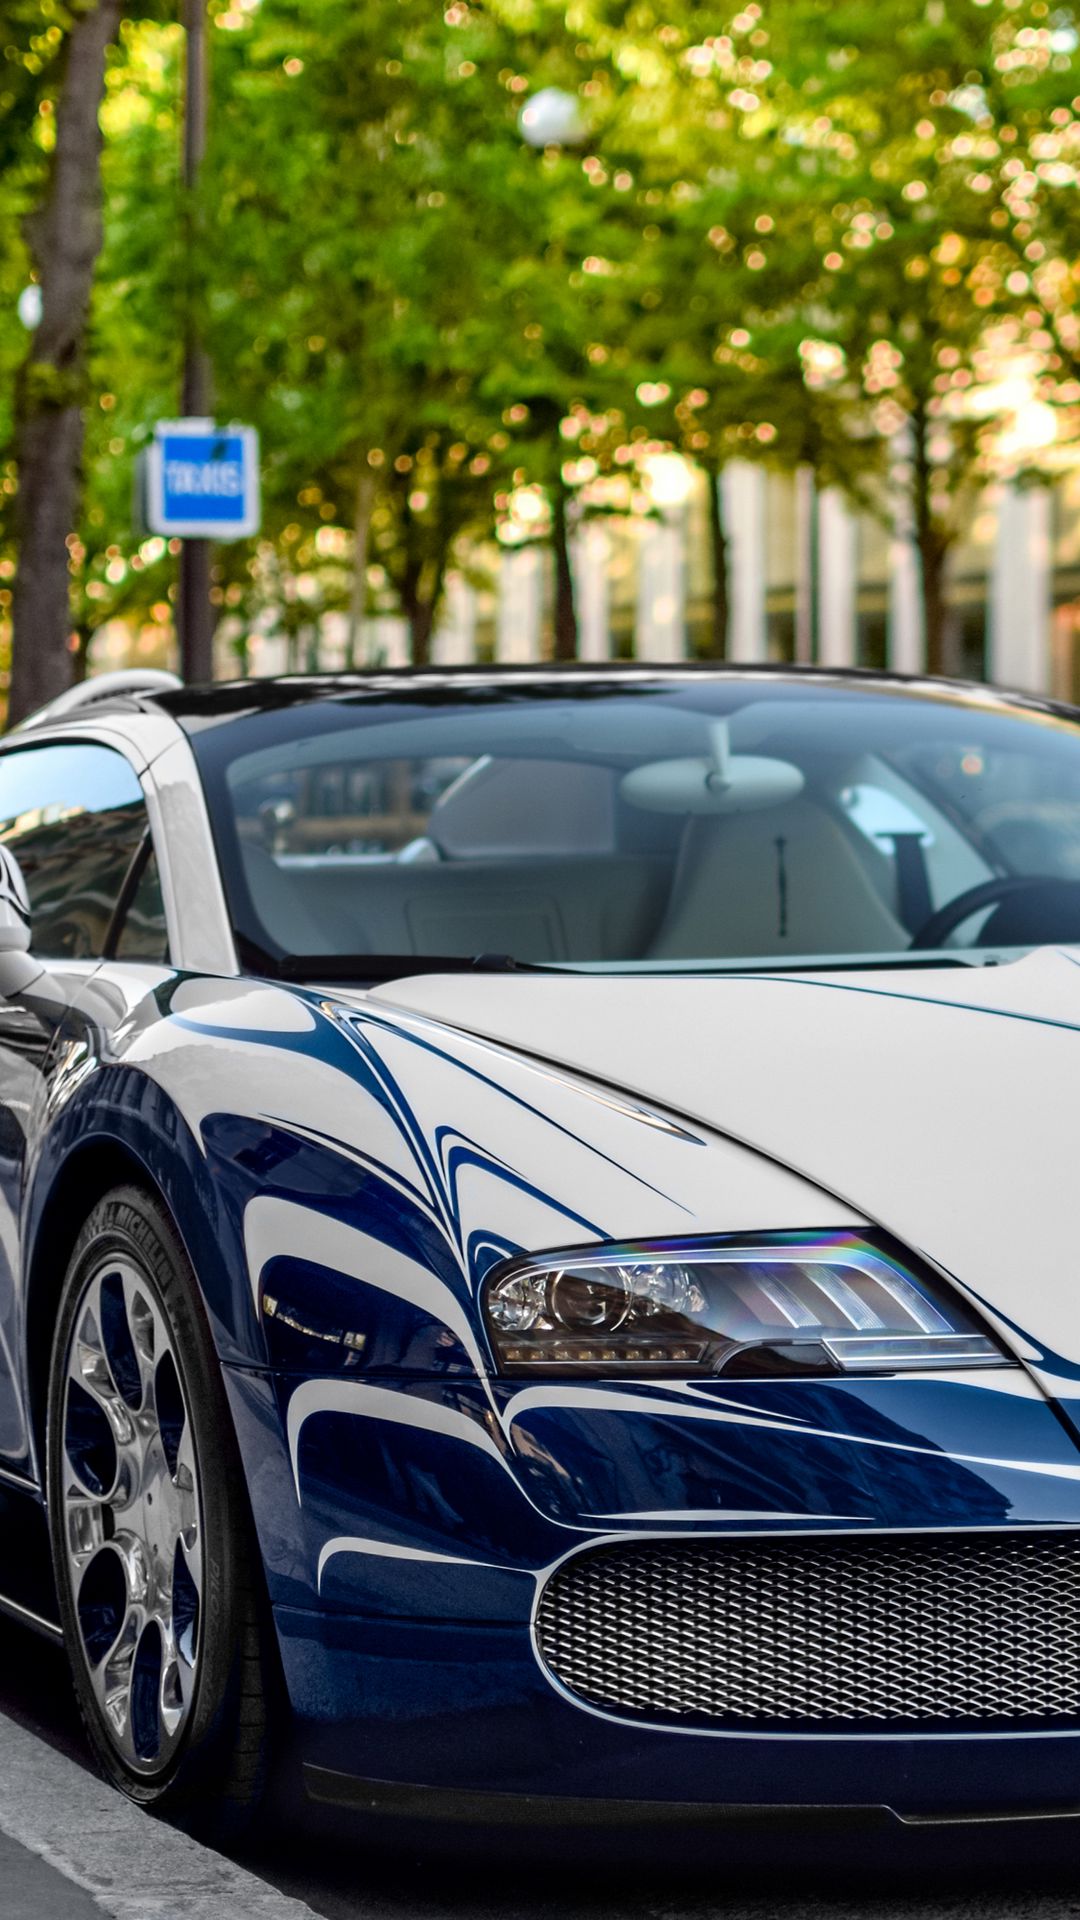 Bugatti Veyron - Thoả sức mơ ước với siêu xe Bugatti Veyron đầy quyền lực, tốc độ và sang trọng. Hình ảnh Bugatti Veyron chắc chắn sẽ khiến bạn phải trầm trồ và mơ tưởng về những chuyến đi xa hoa đầy phấn khích. 